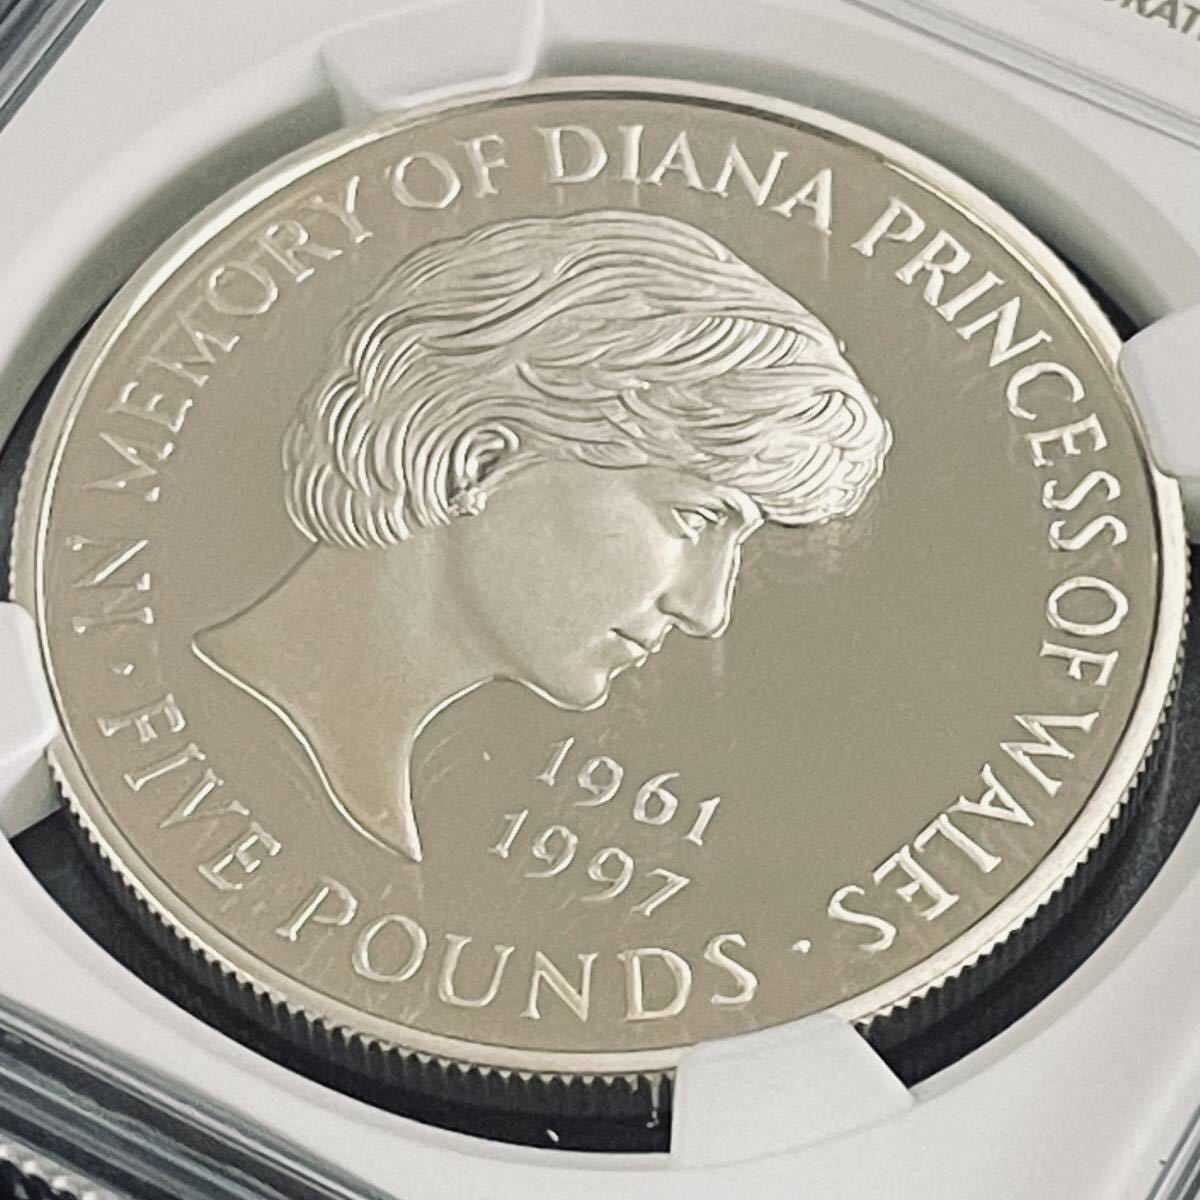 1999 イギリス ダイアナ妃追悼 £5 プルーフ銀貨 NGC PF69UC ⑥